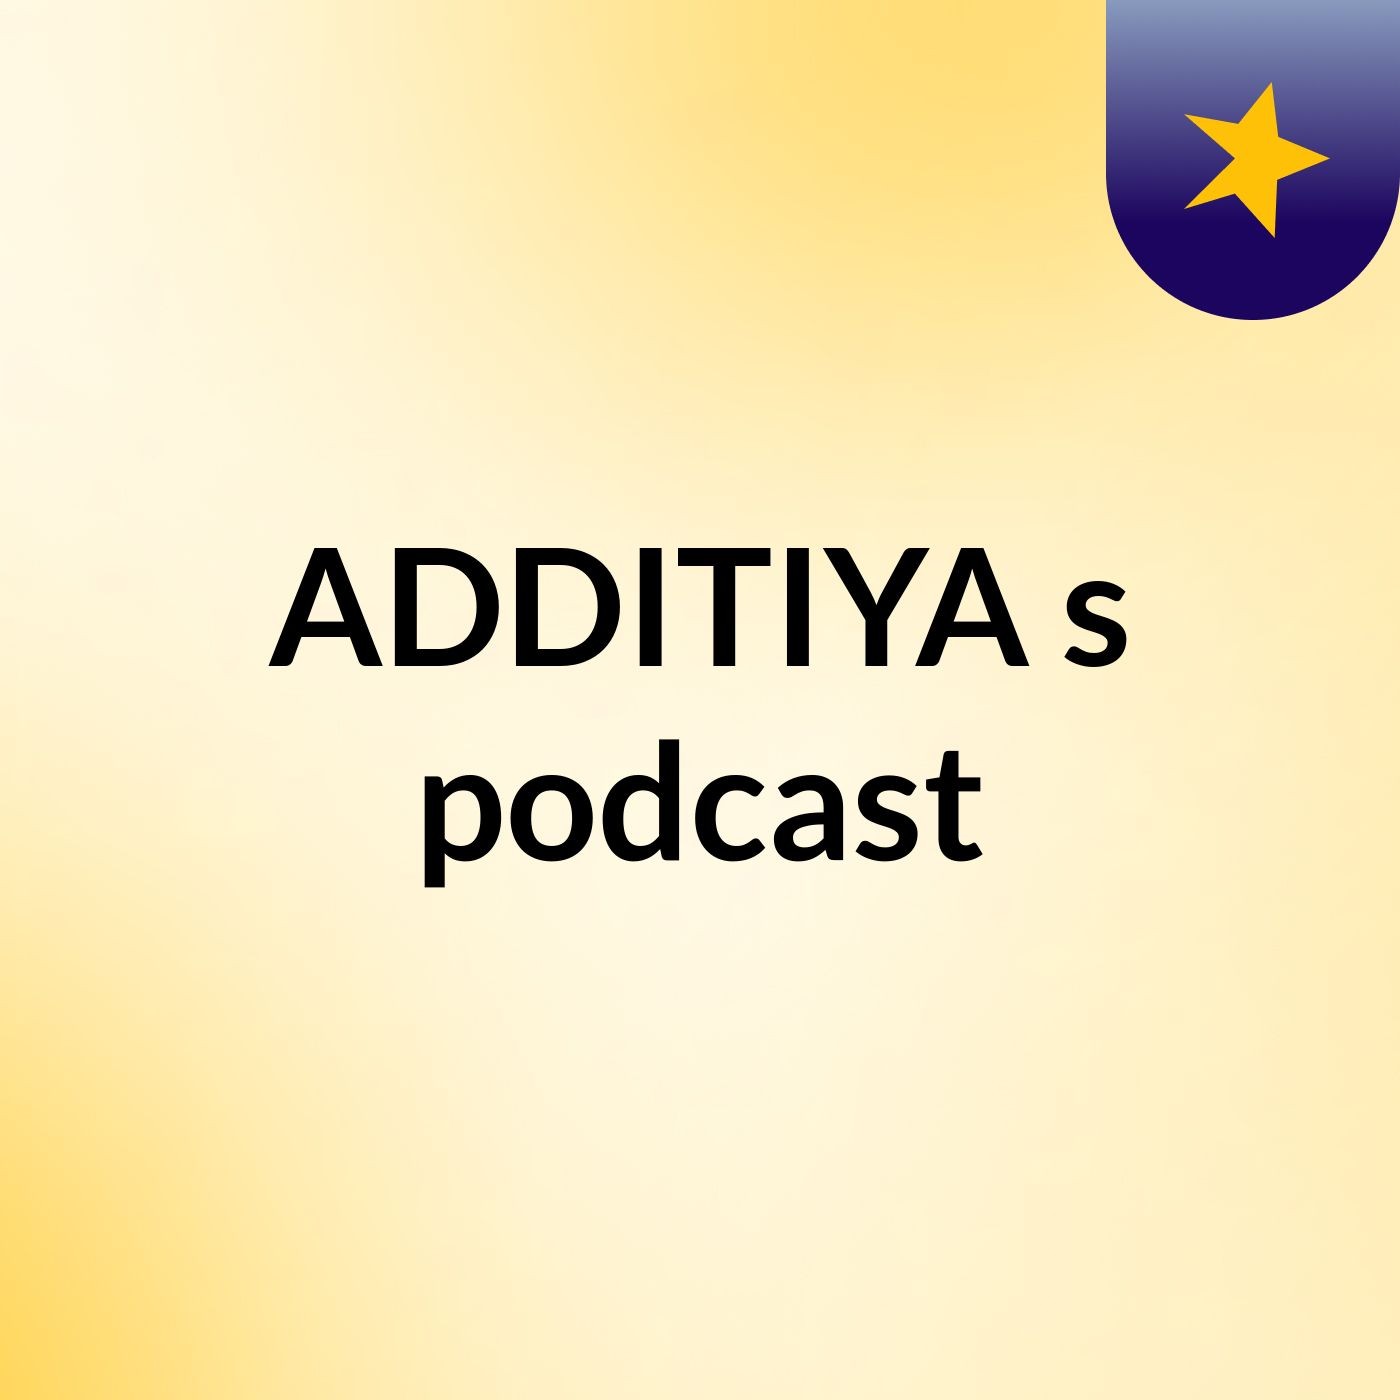 ADDITIYA's podcast